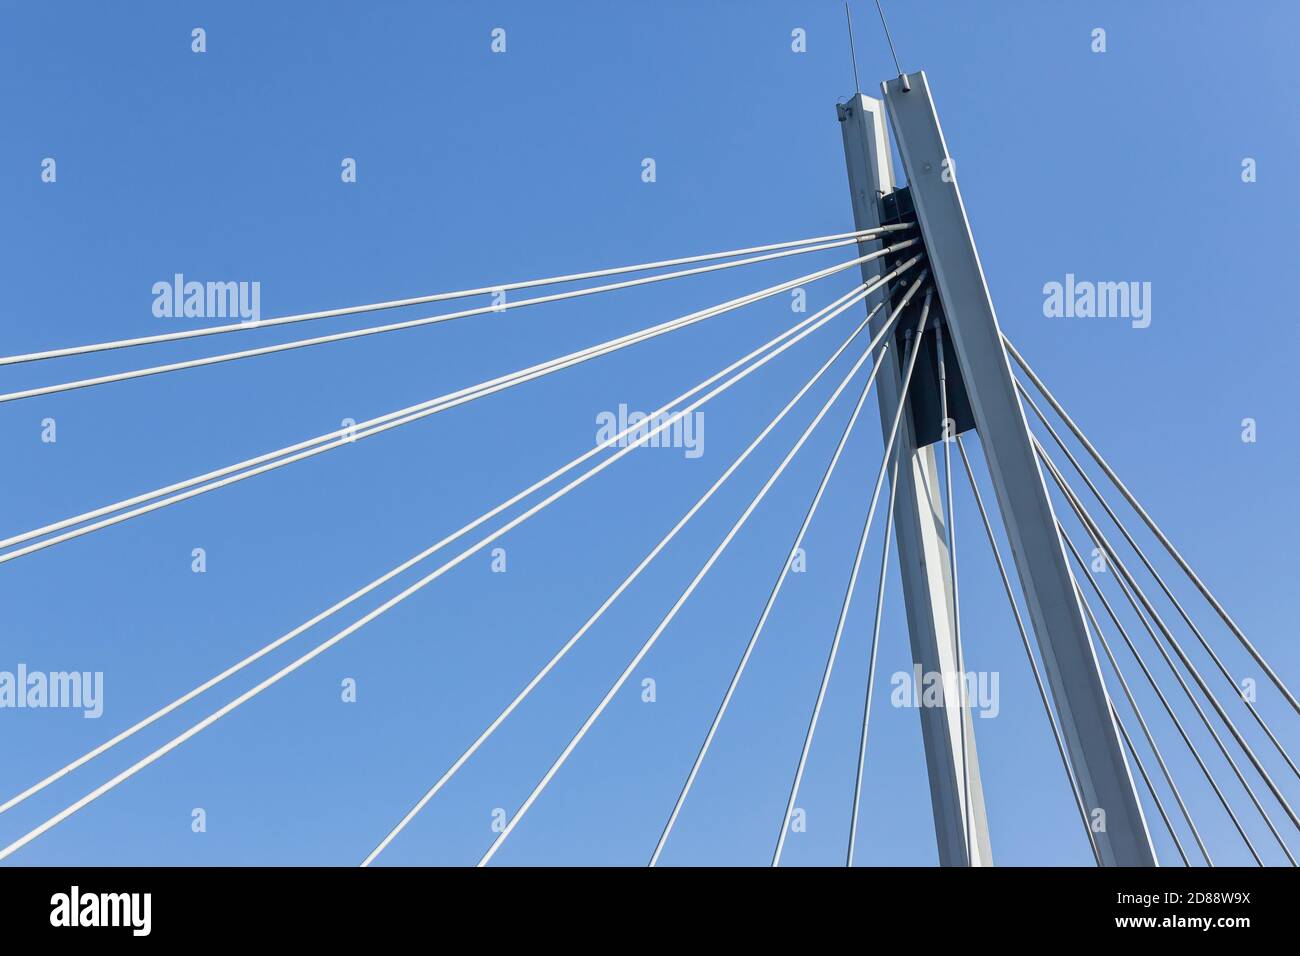 Brücke neue Industrial Engineering Design Nahaufnahme Detail Stahlträger Kabel An der Gehplattform und dem vertikalen Balken gegen den blauen Himmel befestigt Stockfoto